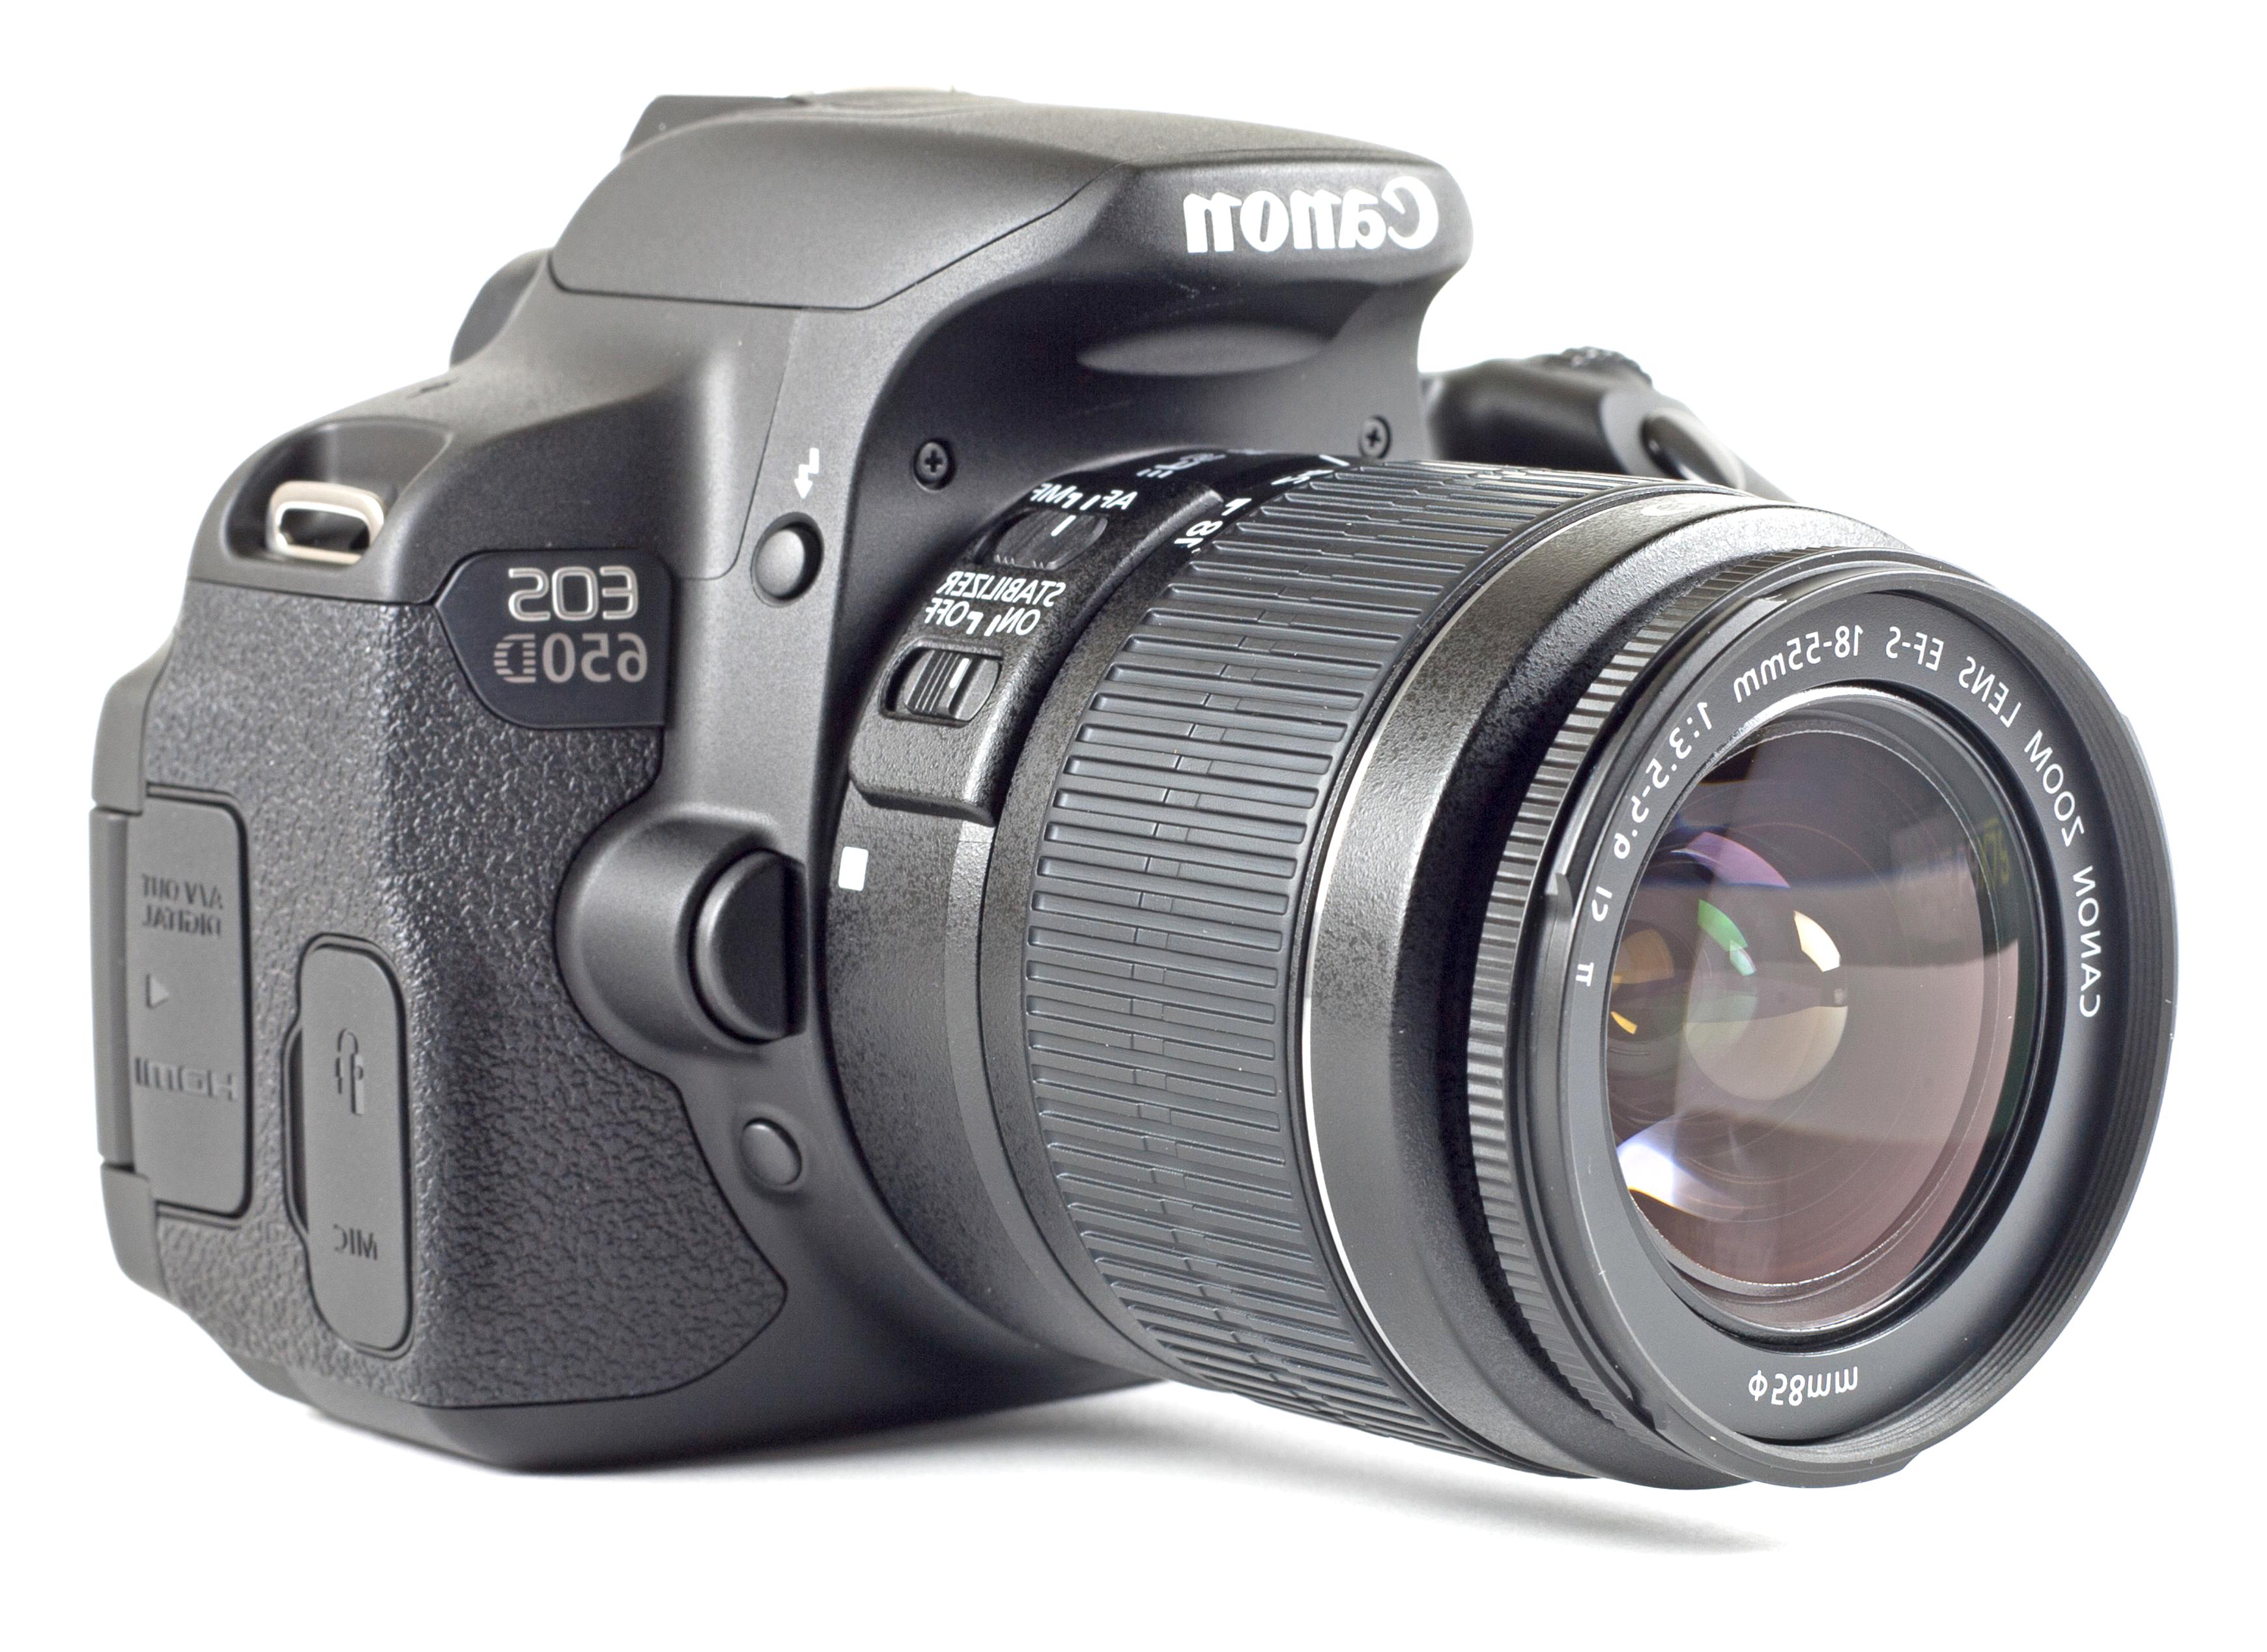  Canon  Eos  650D  Objektiv gebraucht kaufen 3 St bis 75 